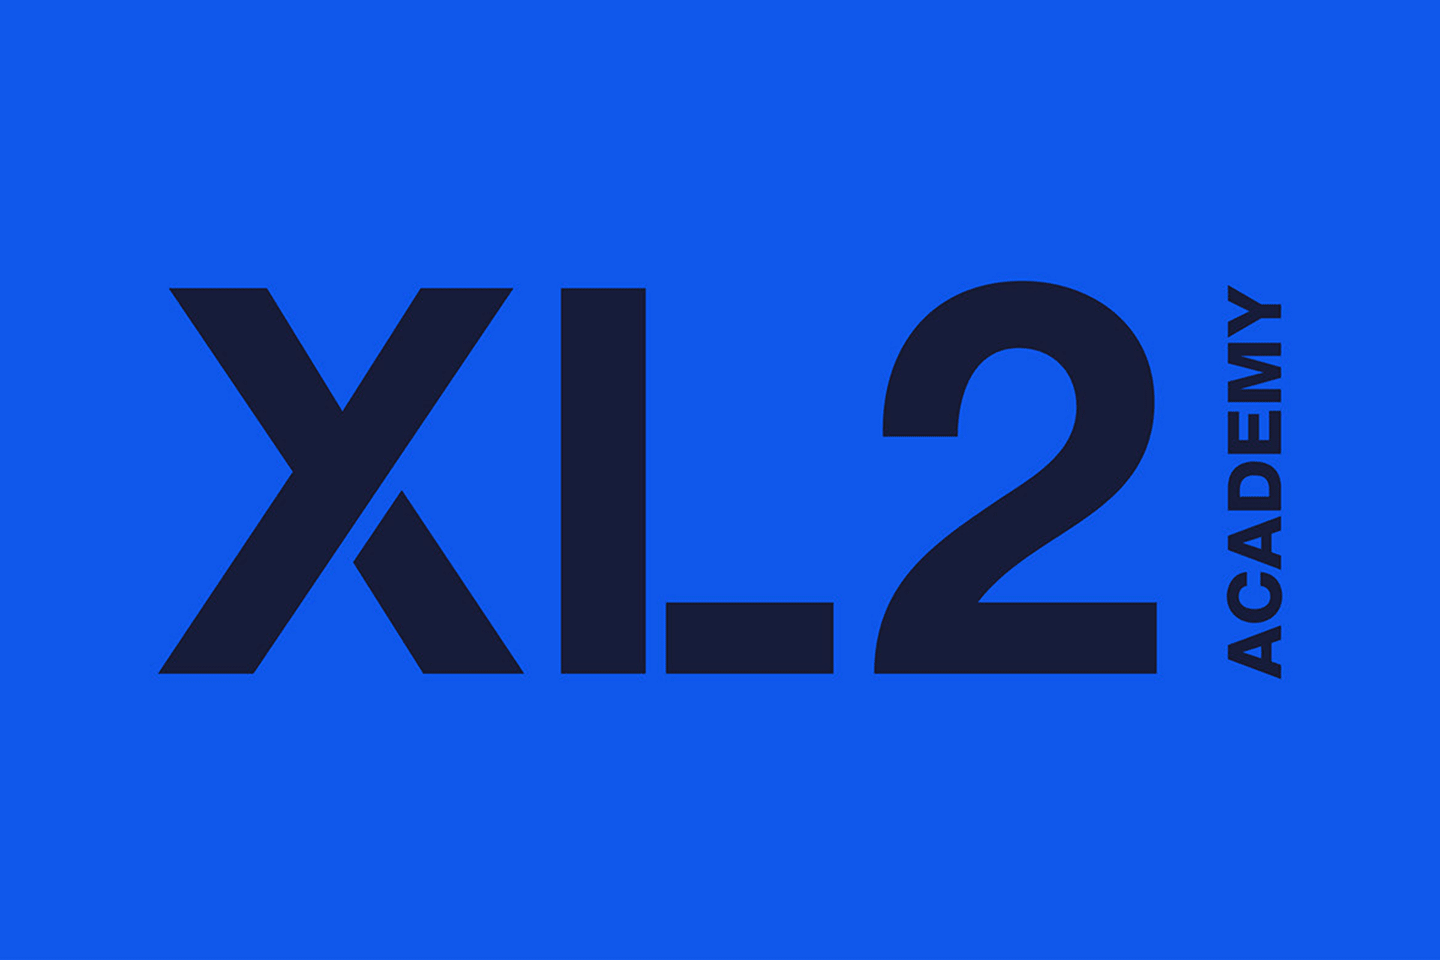 NYXL_XL2